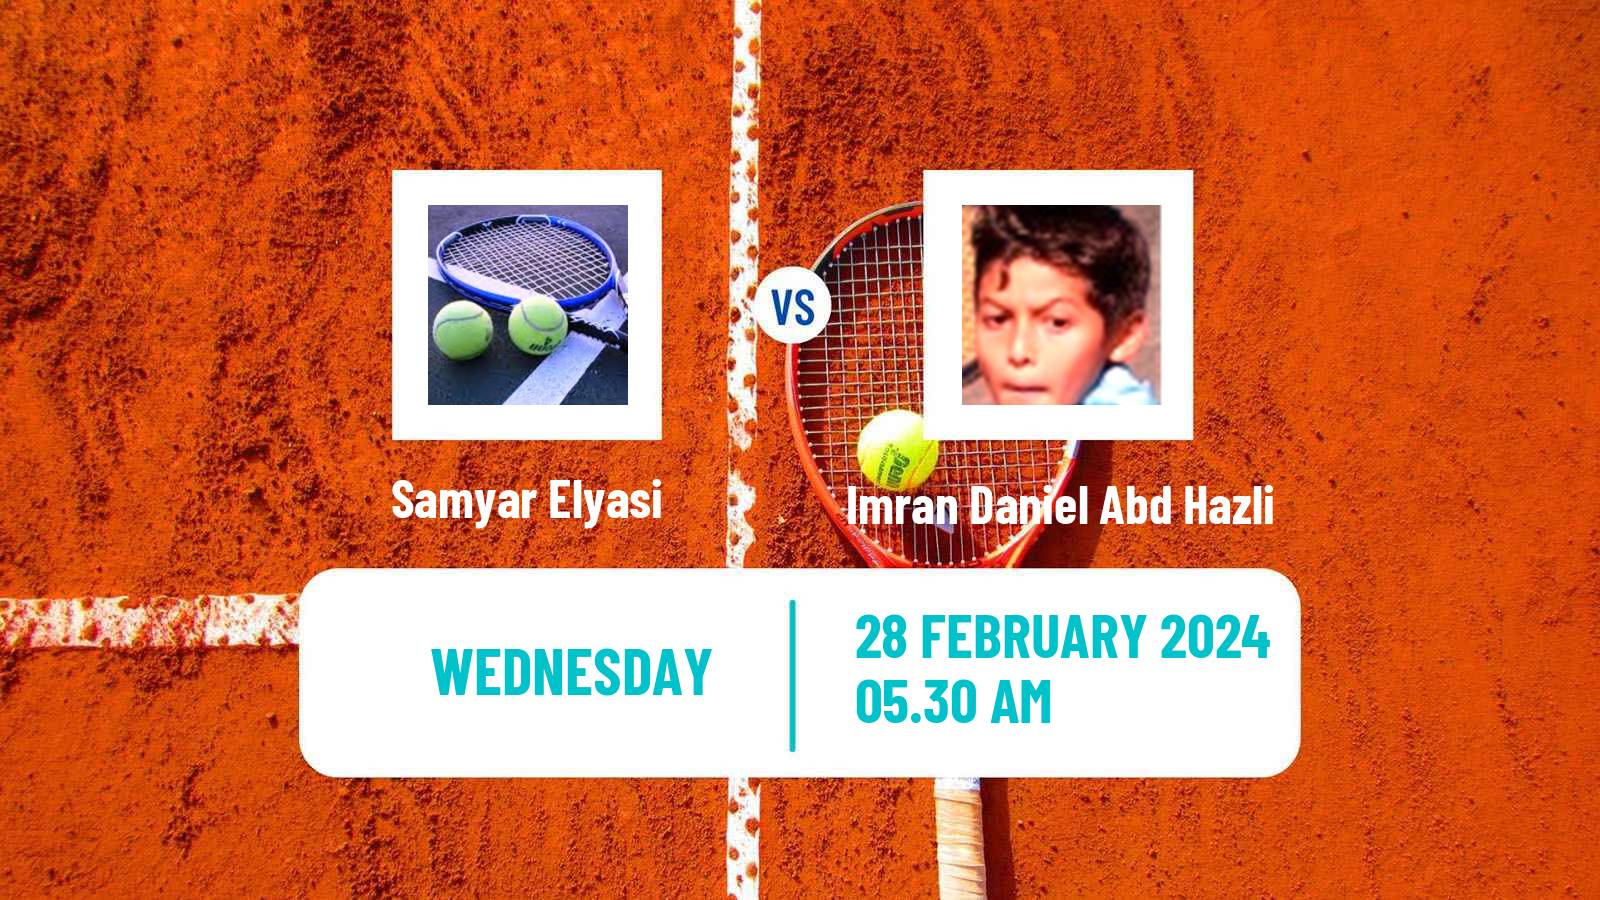 Tennis ITF M15 Kish Island 3 Men Samyar Elyasi - Imran Daniel Abd Hazli